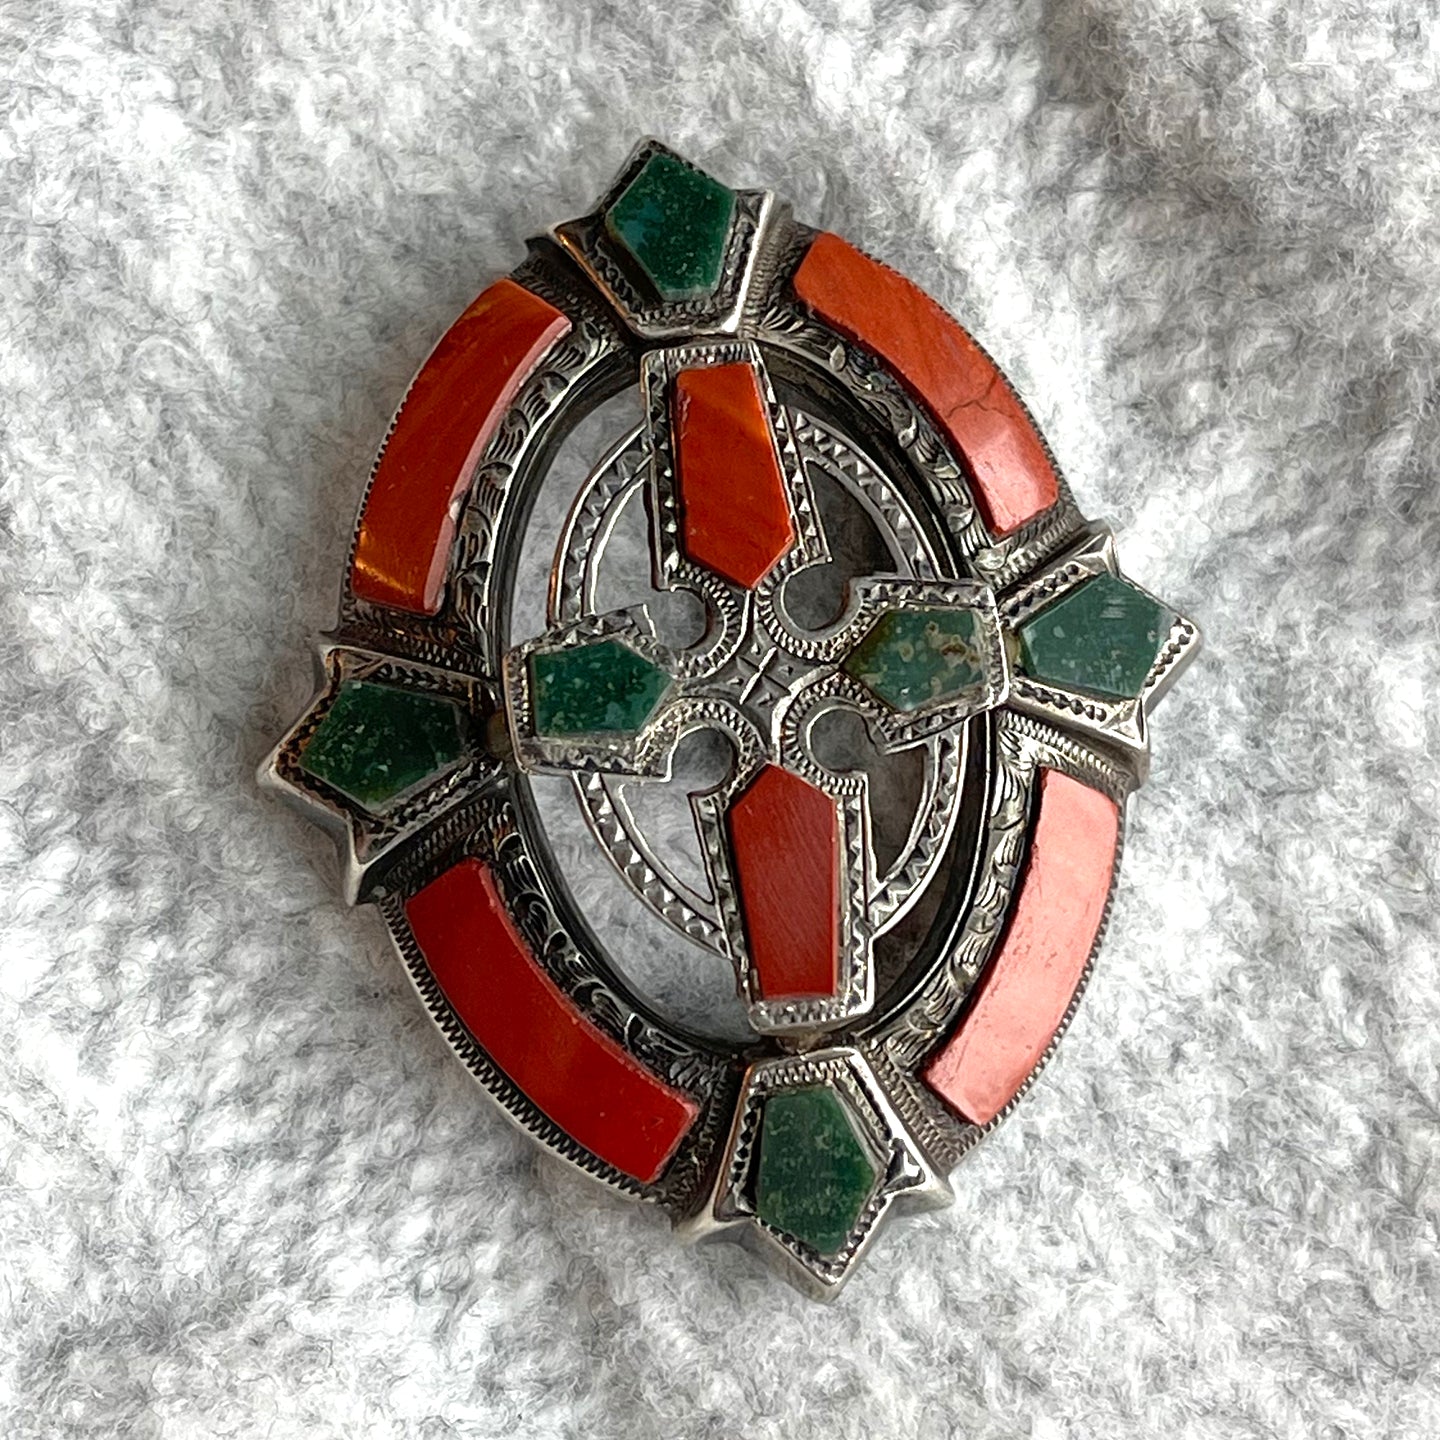 Victorian Silver Scottish Carnelian Bloodstone Brooch Pin